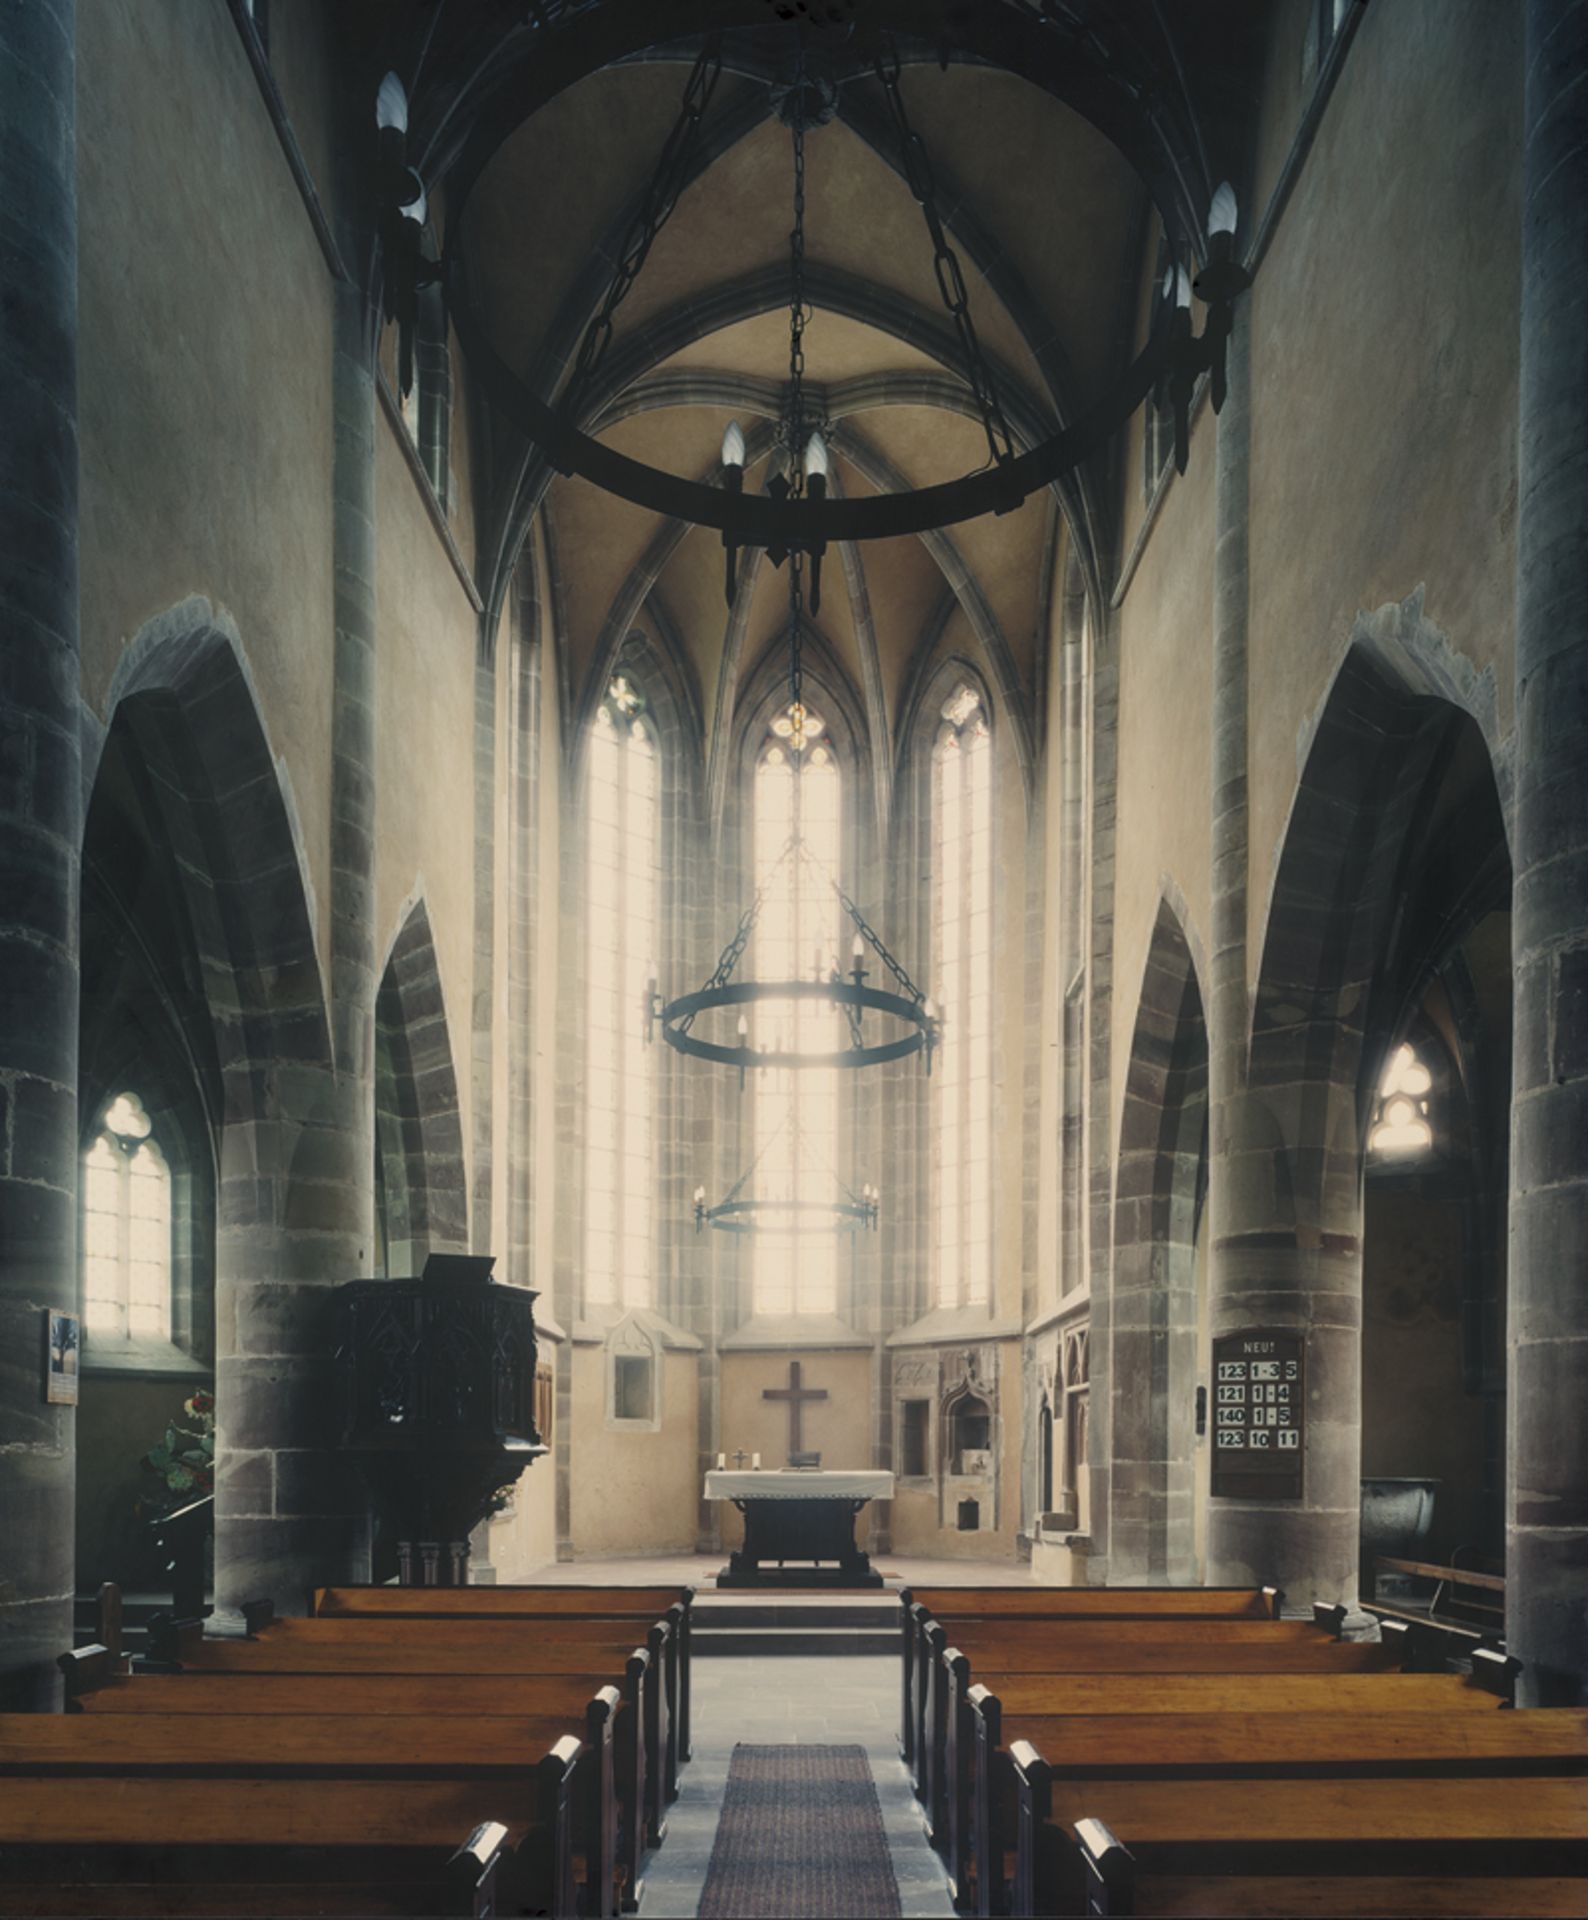 Koenig, Wilmar: German church from the series "Gotteshäuser"